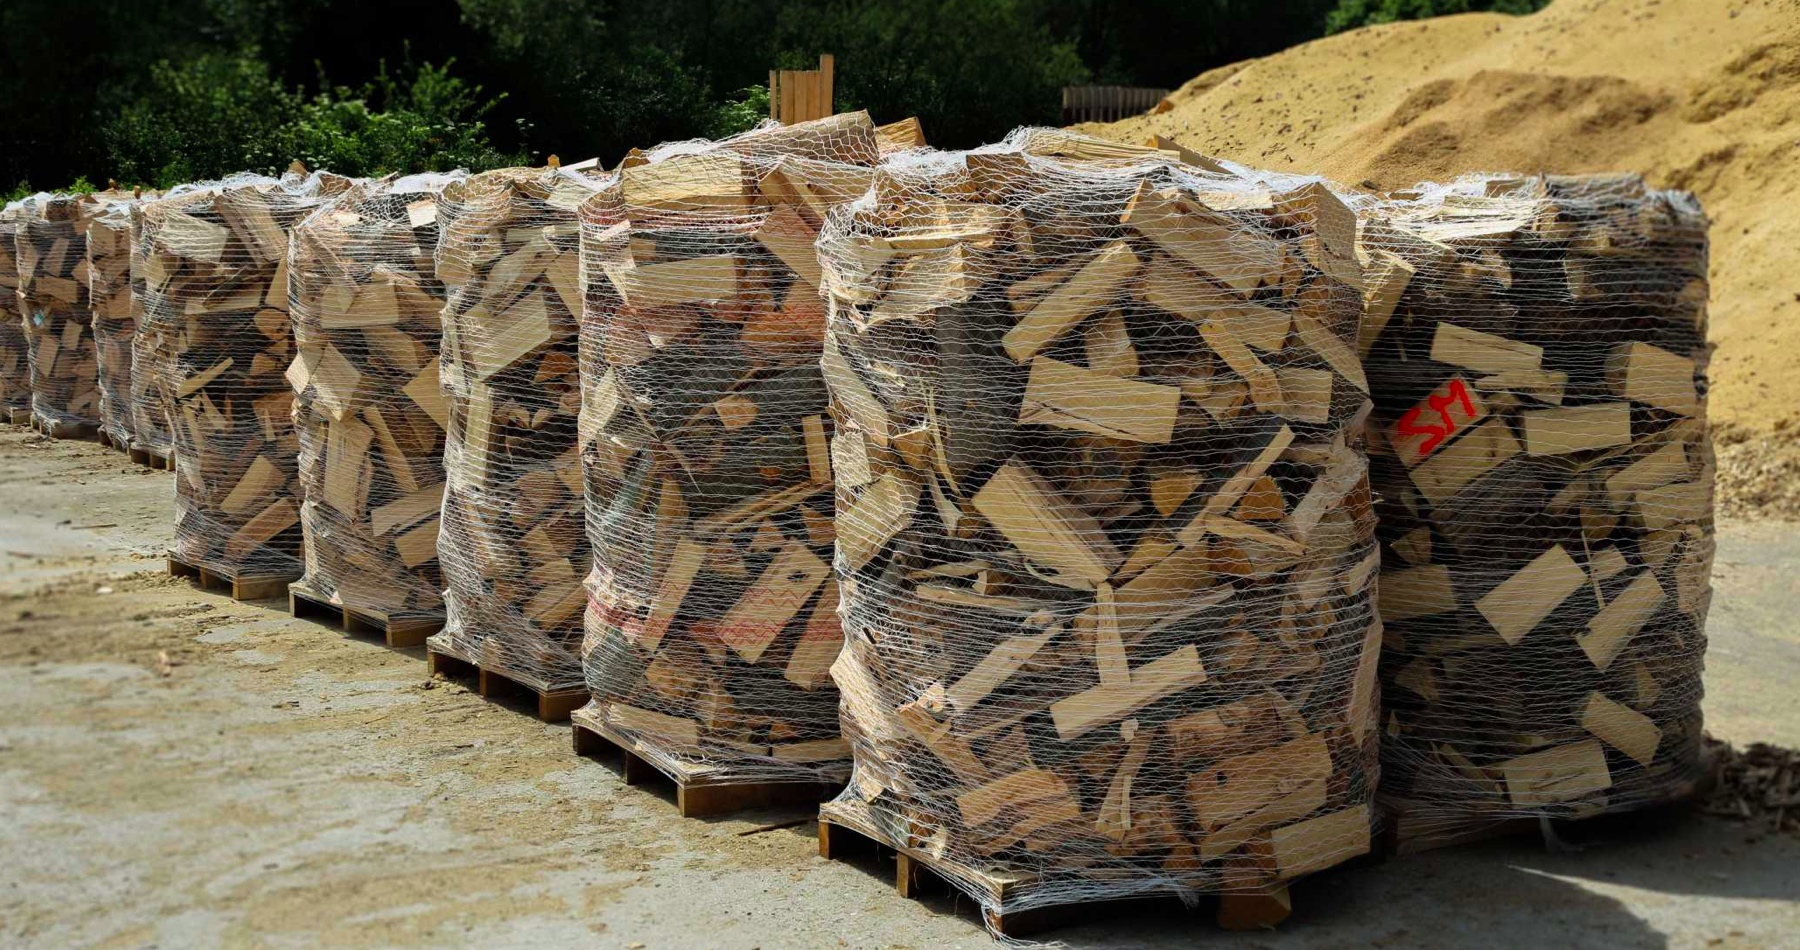 Ľudia na Slovensku zháňajú palivové drevo, záujem je enormný . Dopyt po ňom je o 45 percent vyšší ako v minulom roku. Na domácnosť stanovili maximálny limit 